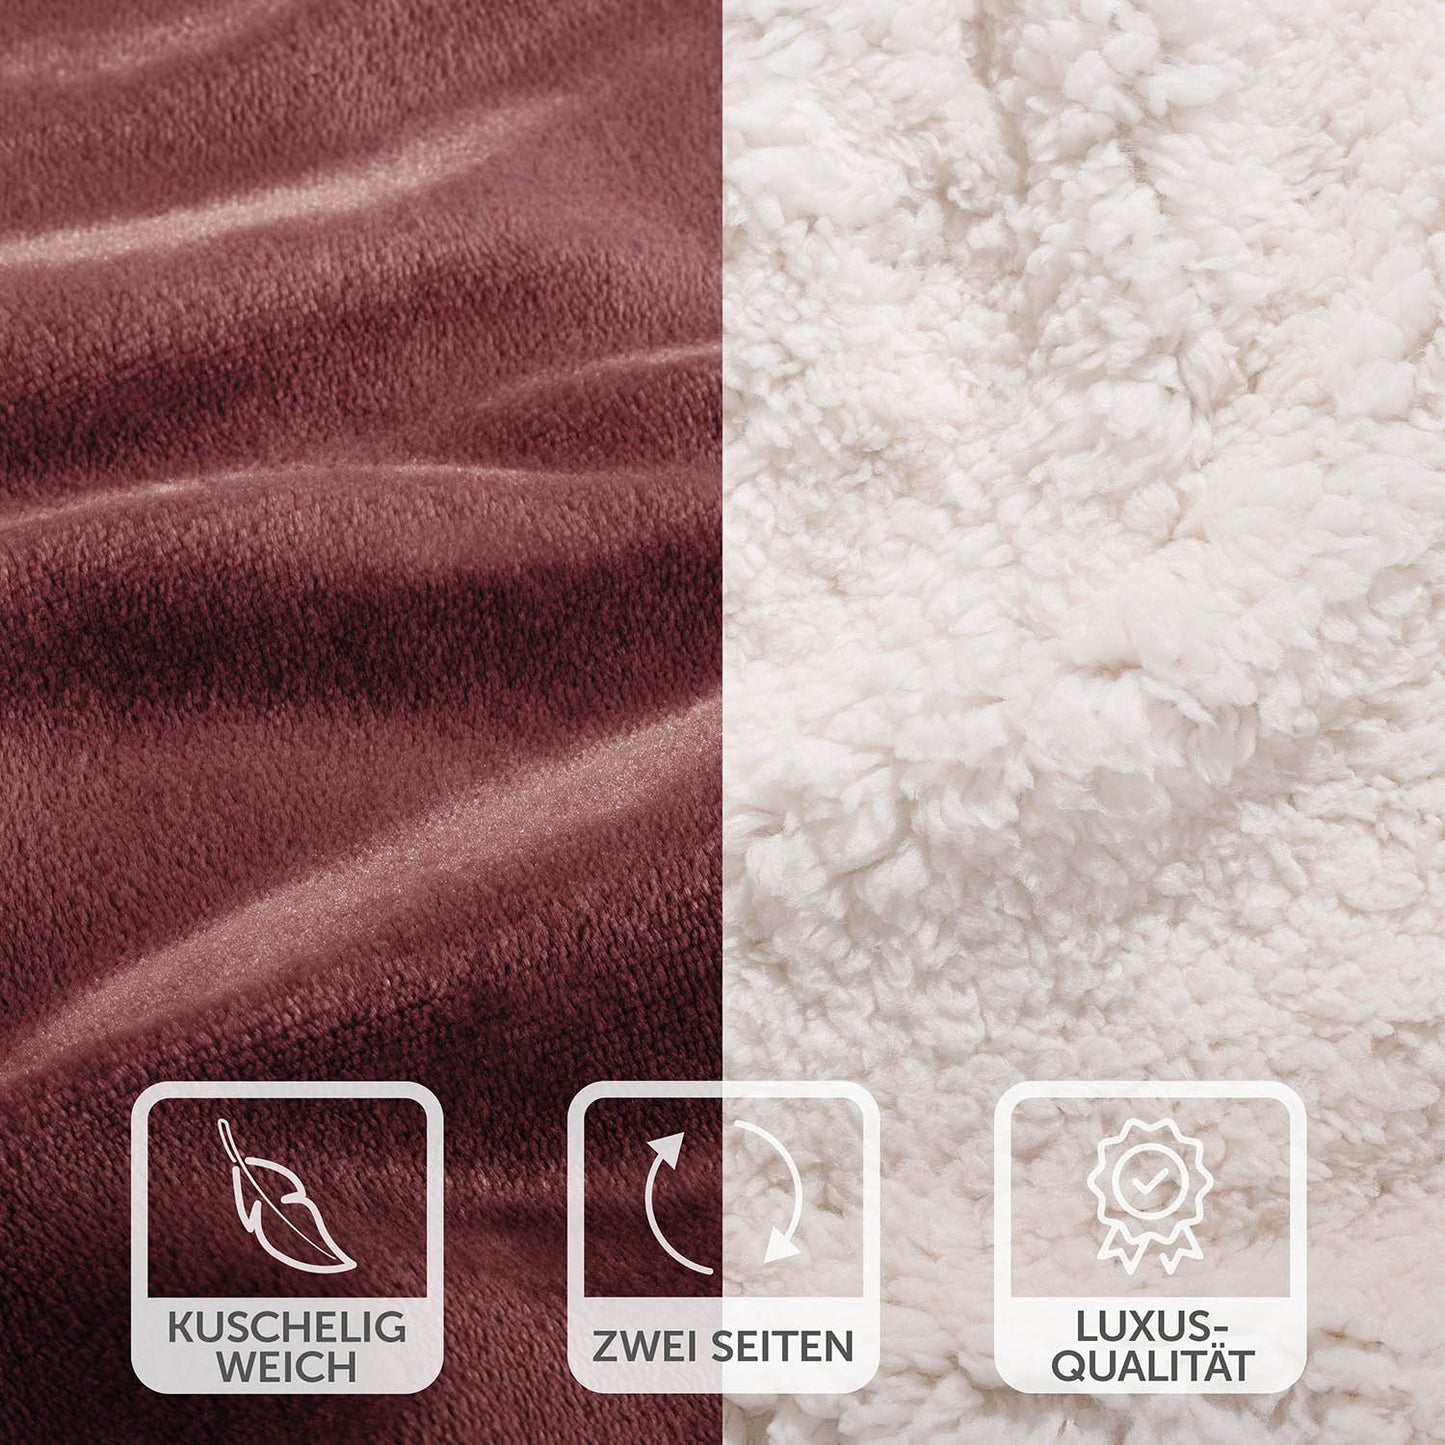 Nahaufnahme der rot-weinroten Decke mit weicher Oberfläche und weißer Fleece-Seite, Symbole betonen die kuschelige Weichheit und Luxus-Qualität.